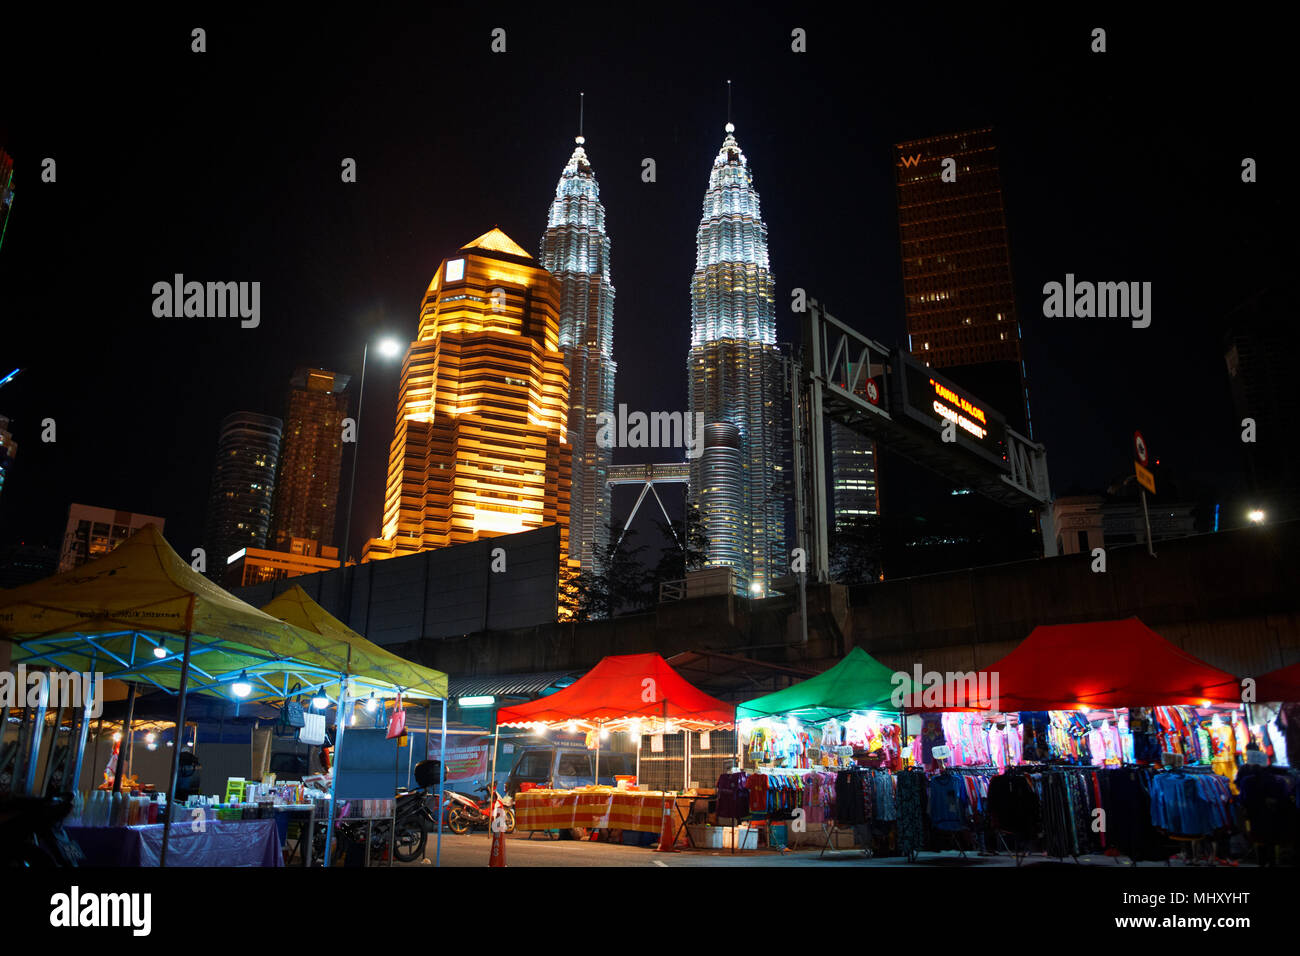 Kampung baru marché par petronas towers illuminé la nuit, Kuala Lumpur, Malaisie Banque D'Images